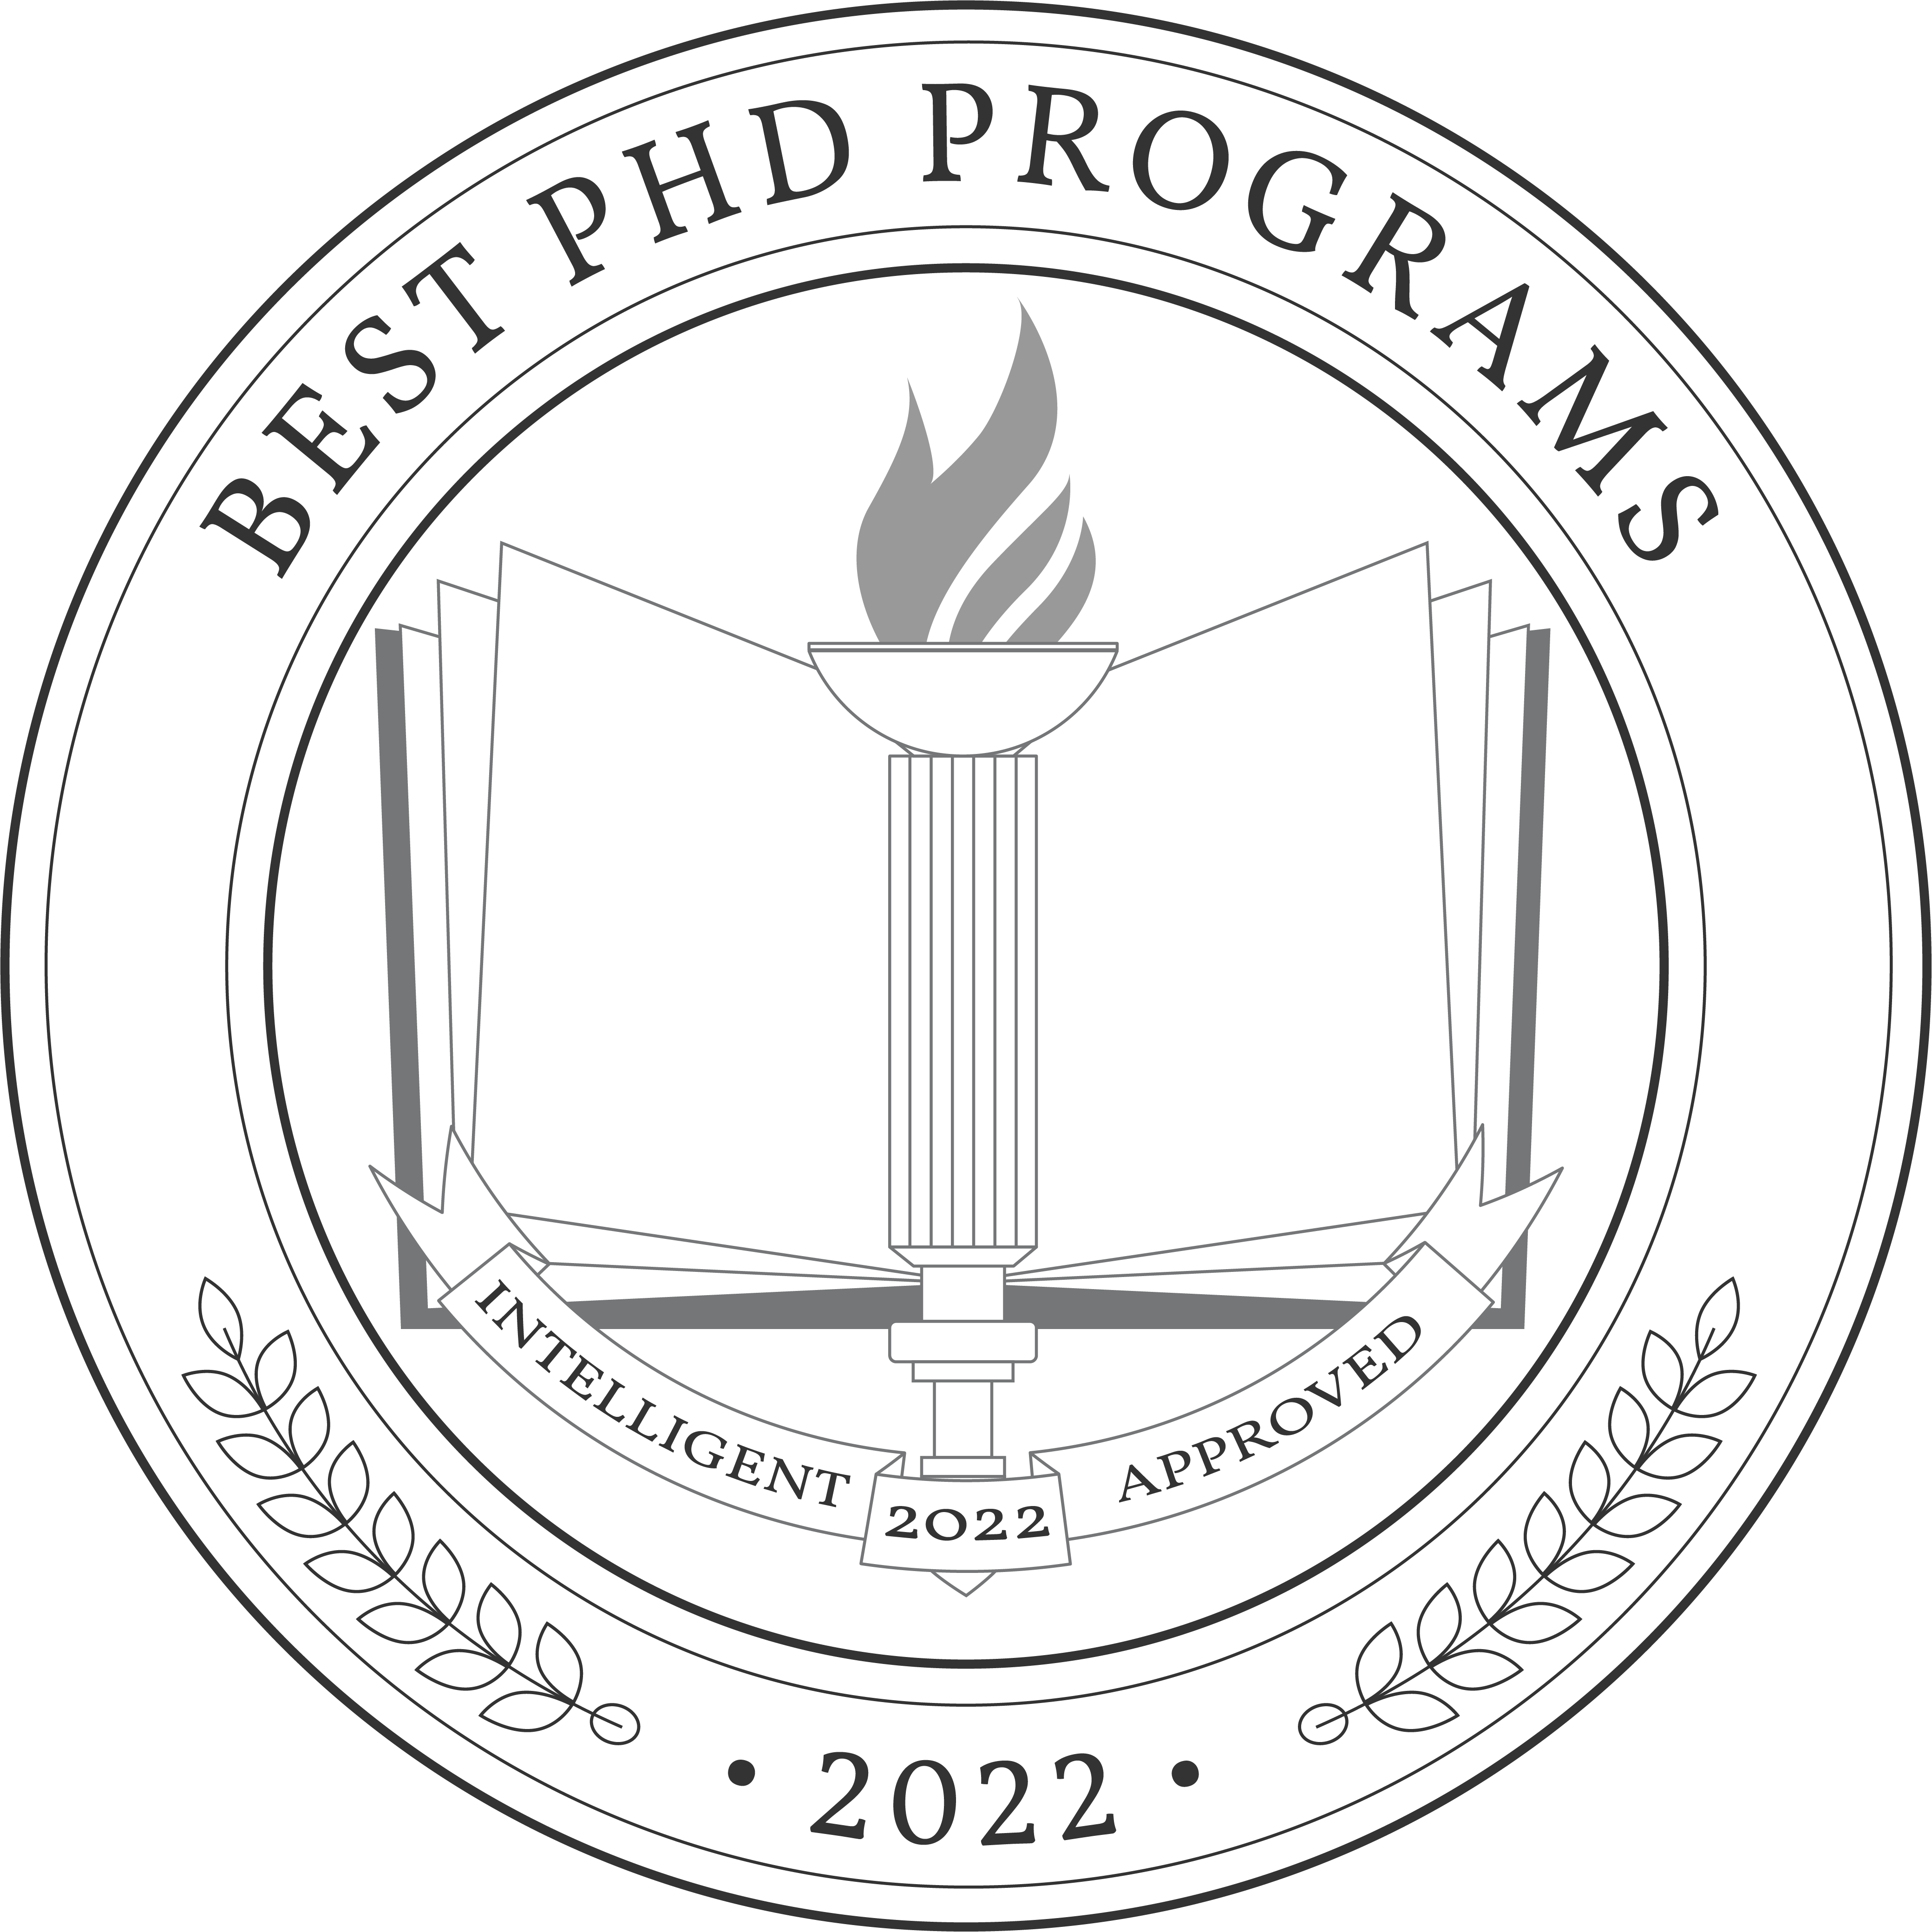 Best PhD Programs